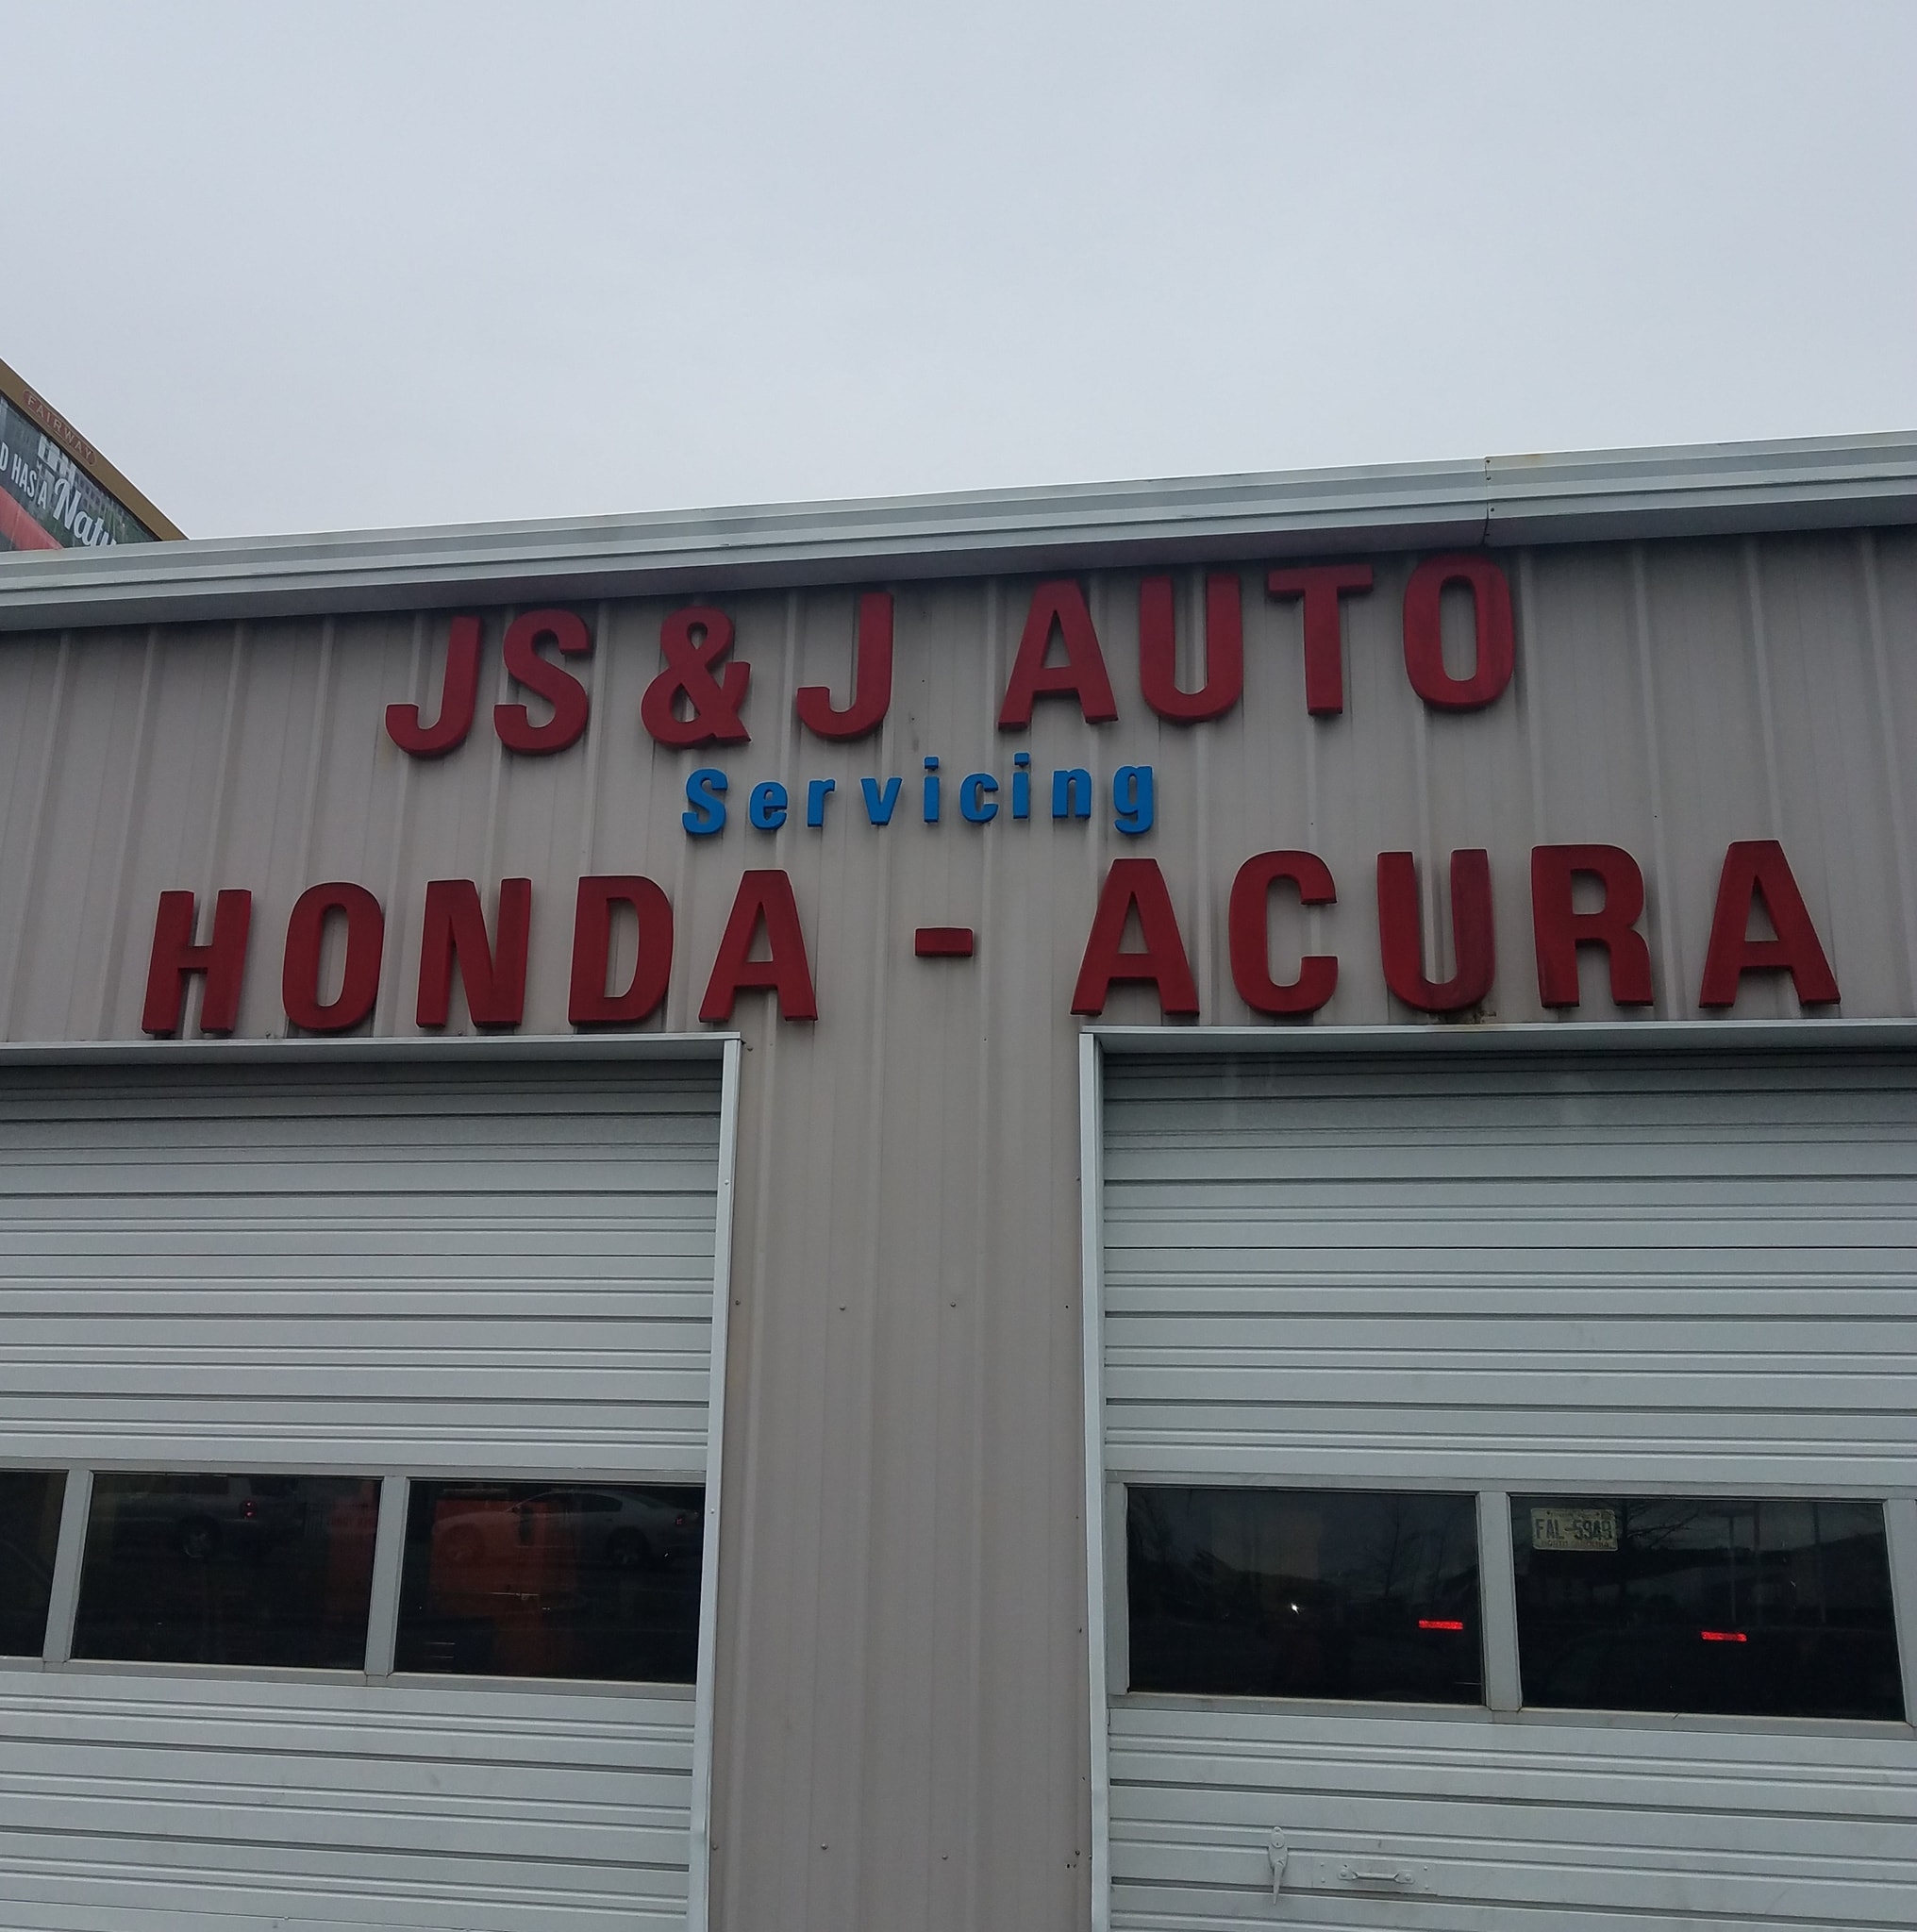 J S & J Auto Honda Acura Services